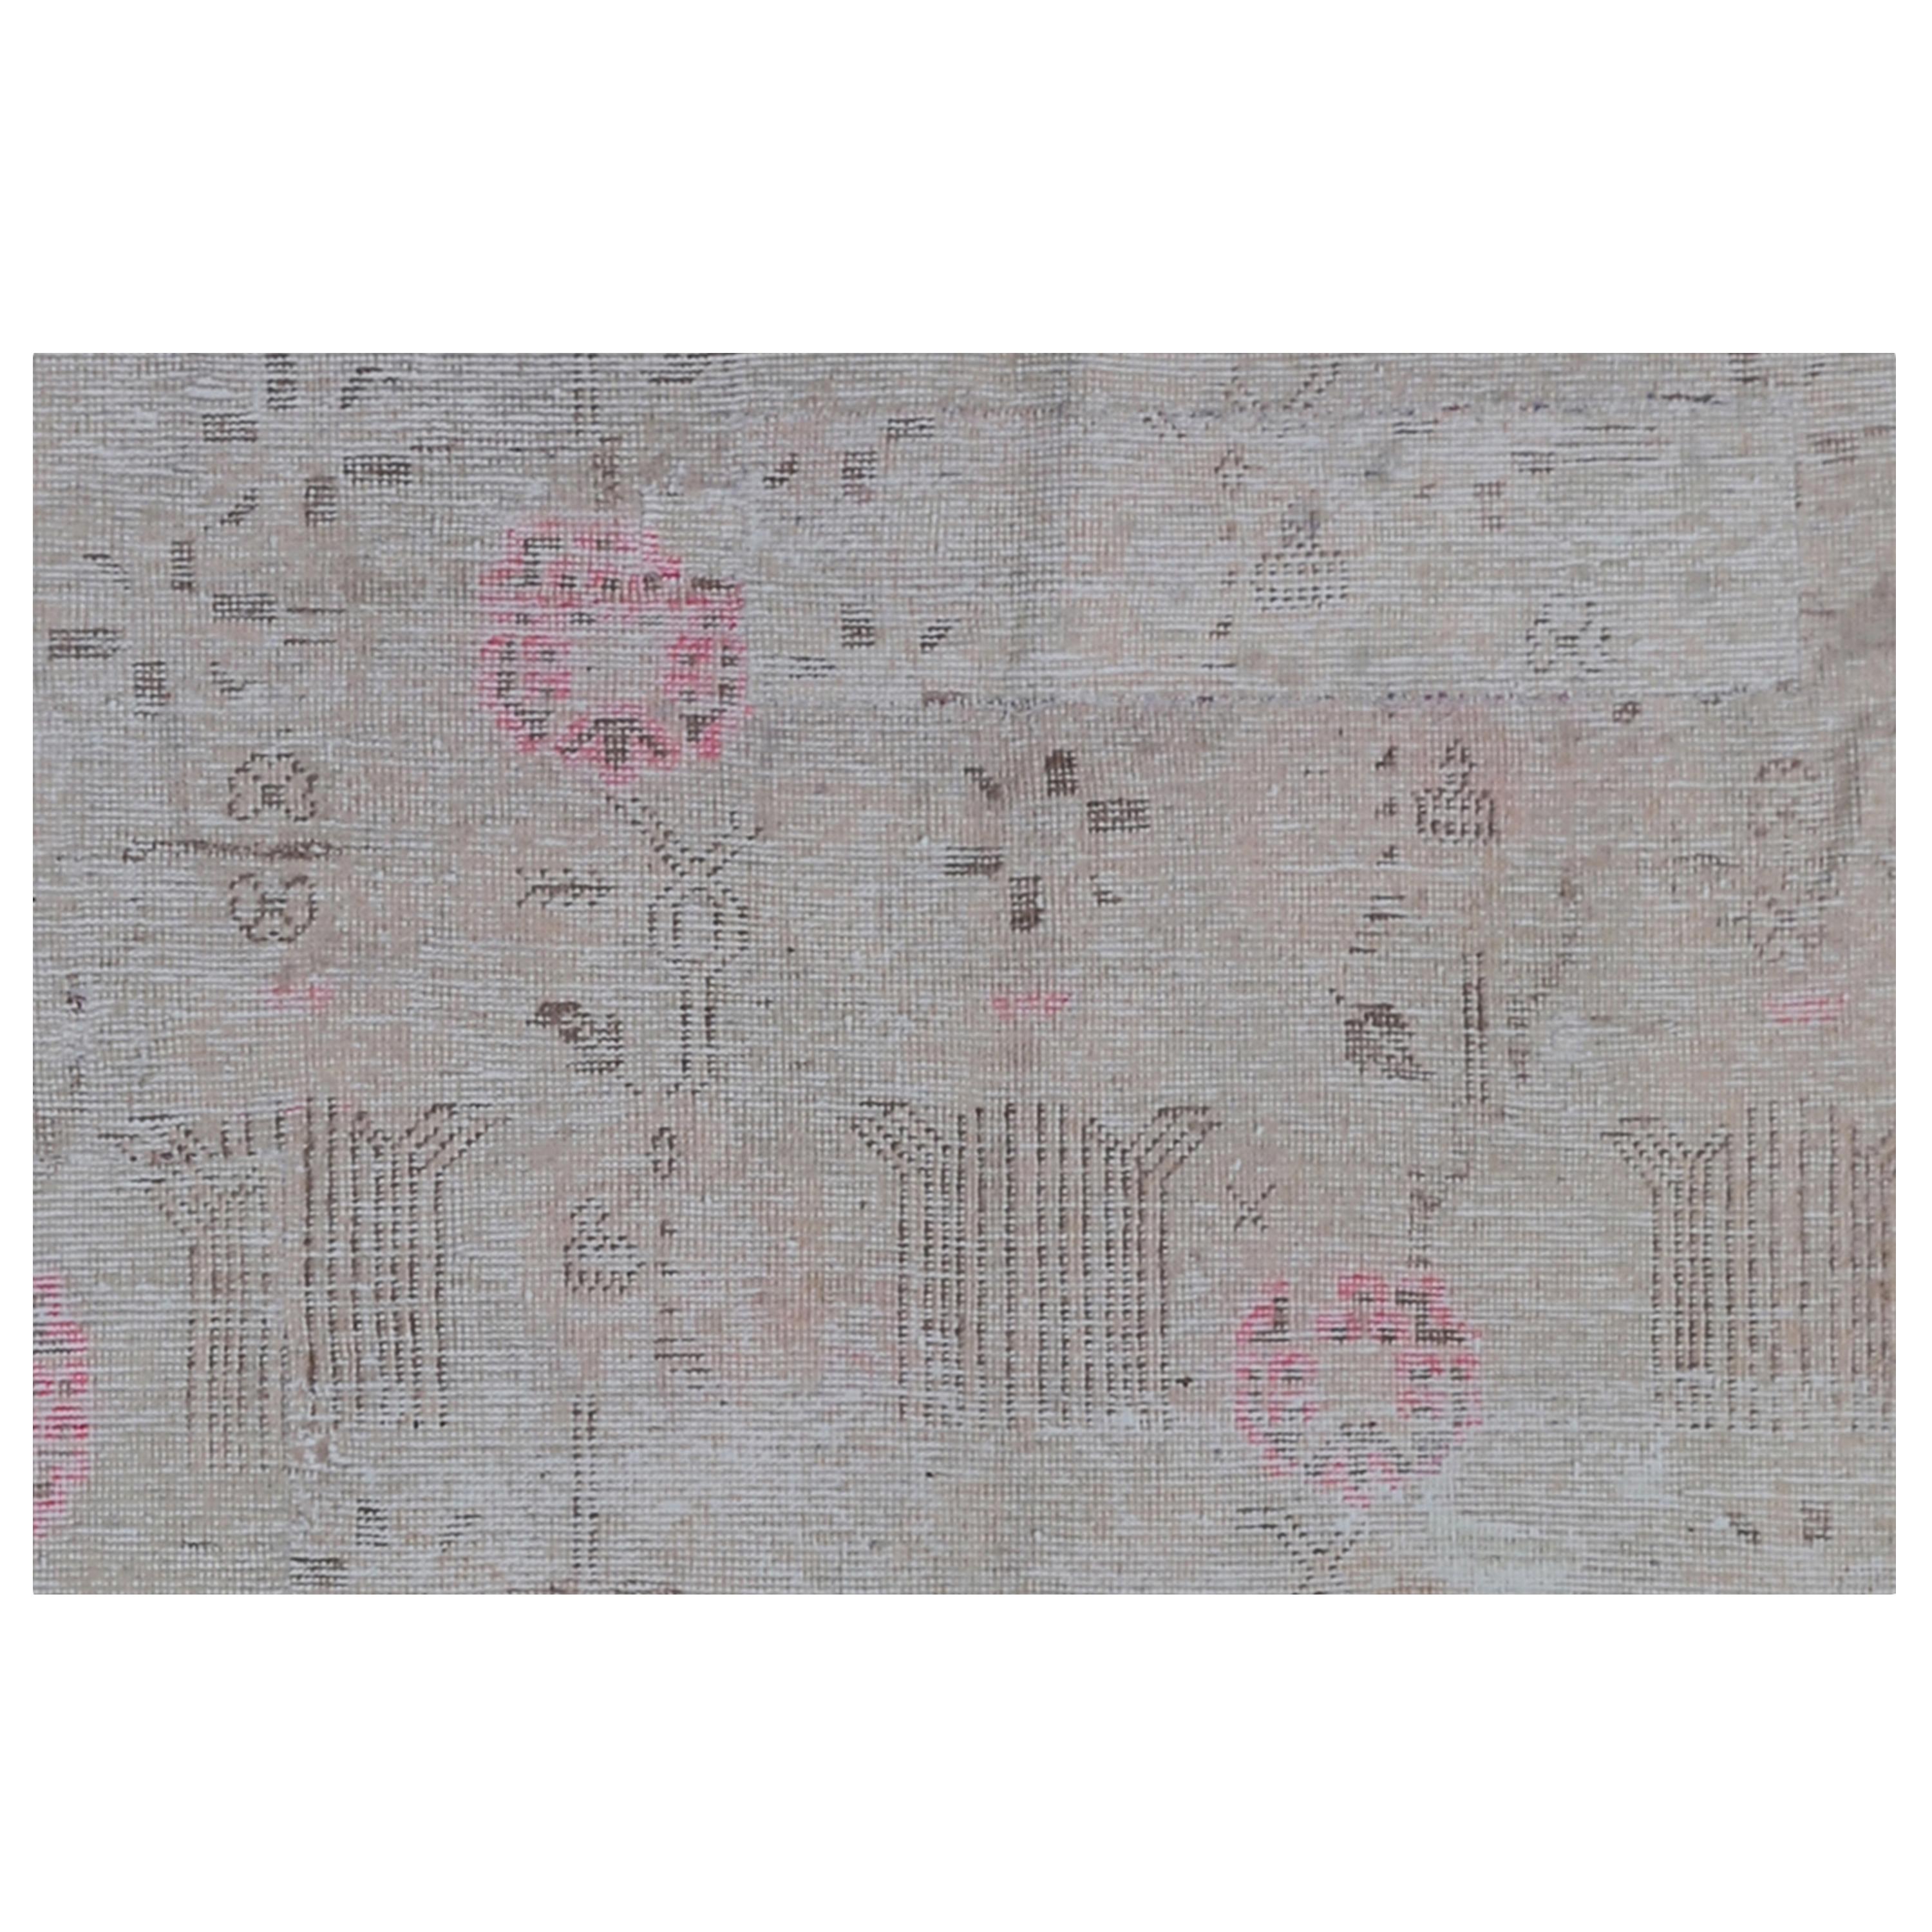 Dieser graue und rosafarbene Vintage-Teppich aus einer Woll-Baumwoll-Mischung (6'1